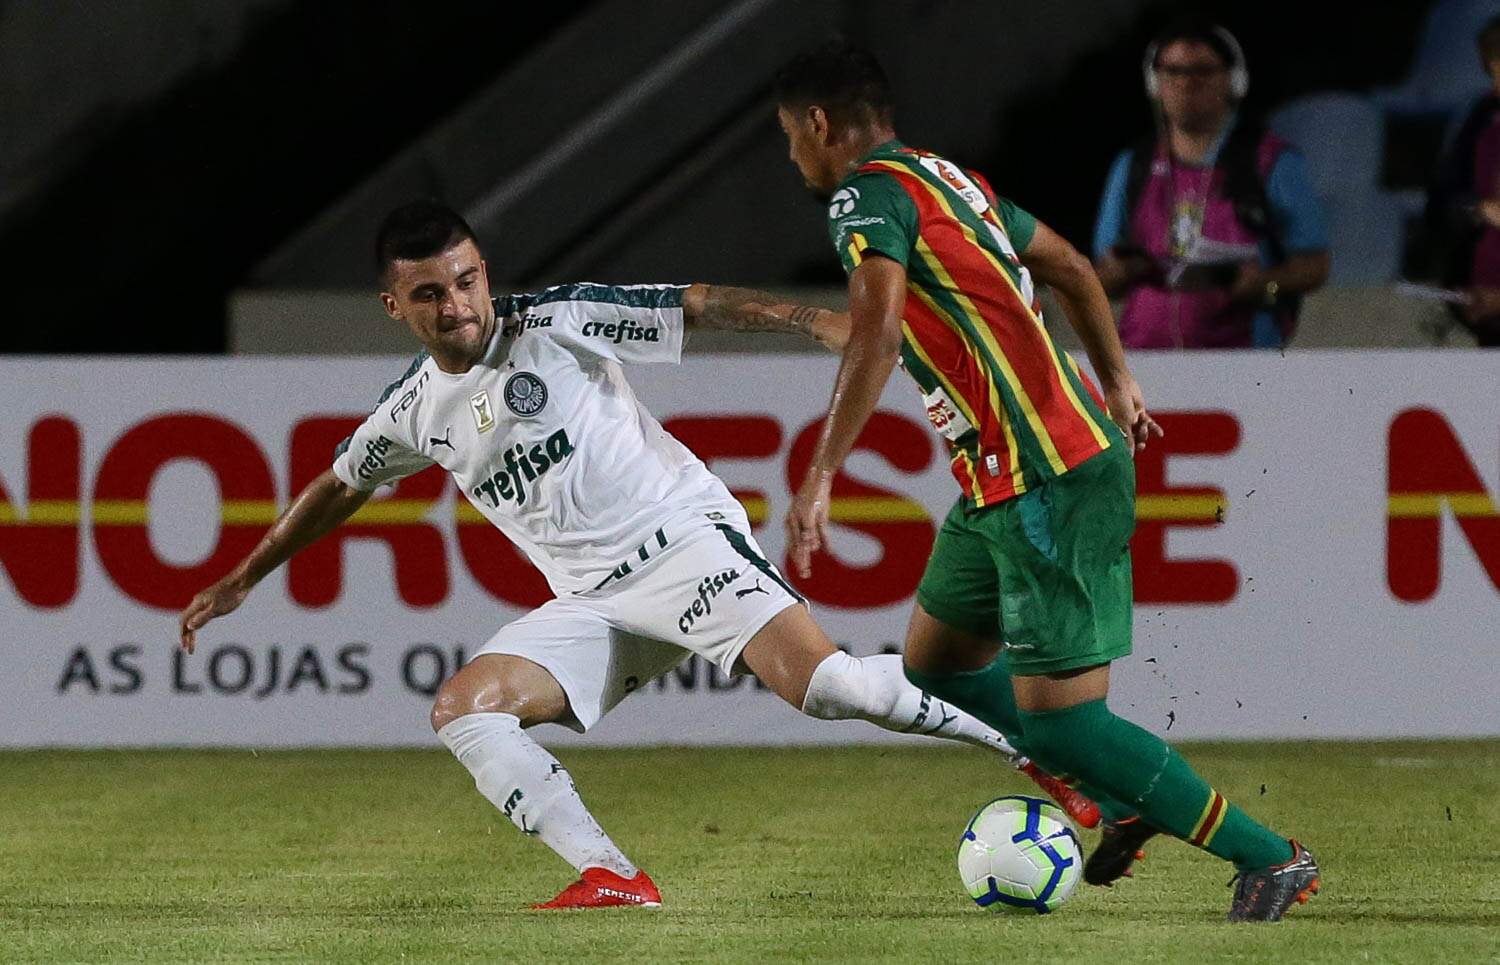 Nos acréscimos, Palmeiras venceu o Sampaio Corrêa em São Luís